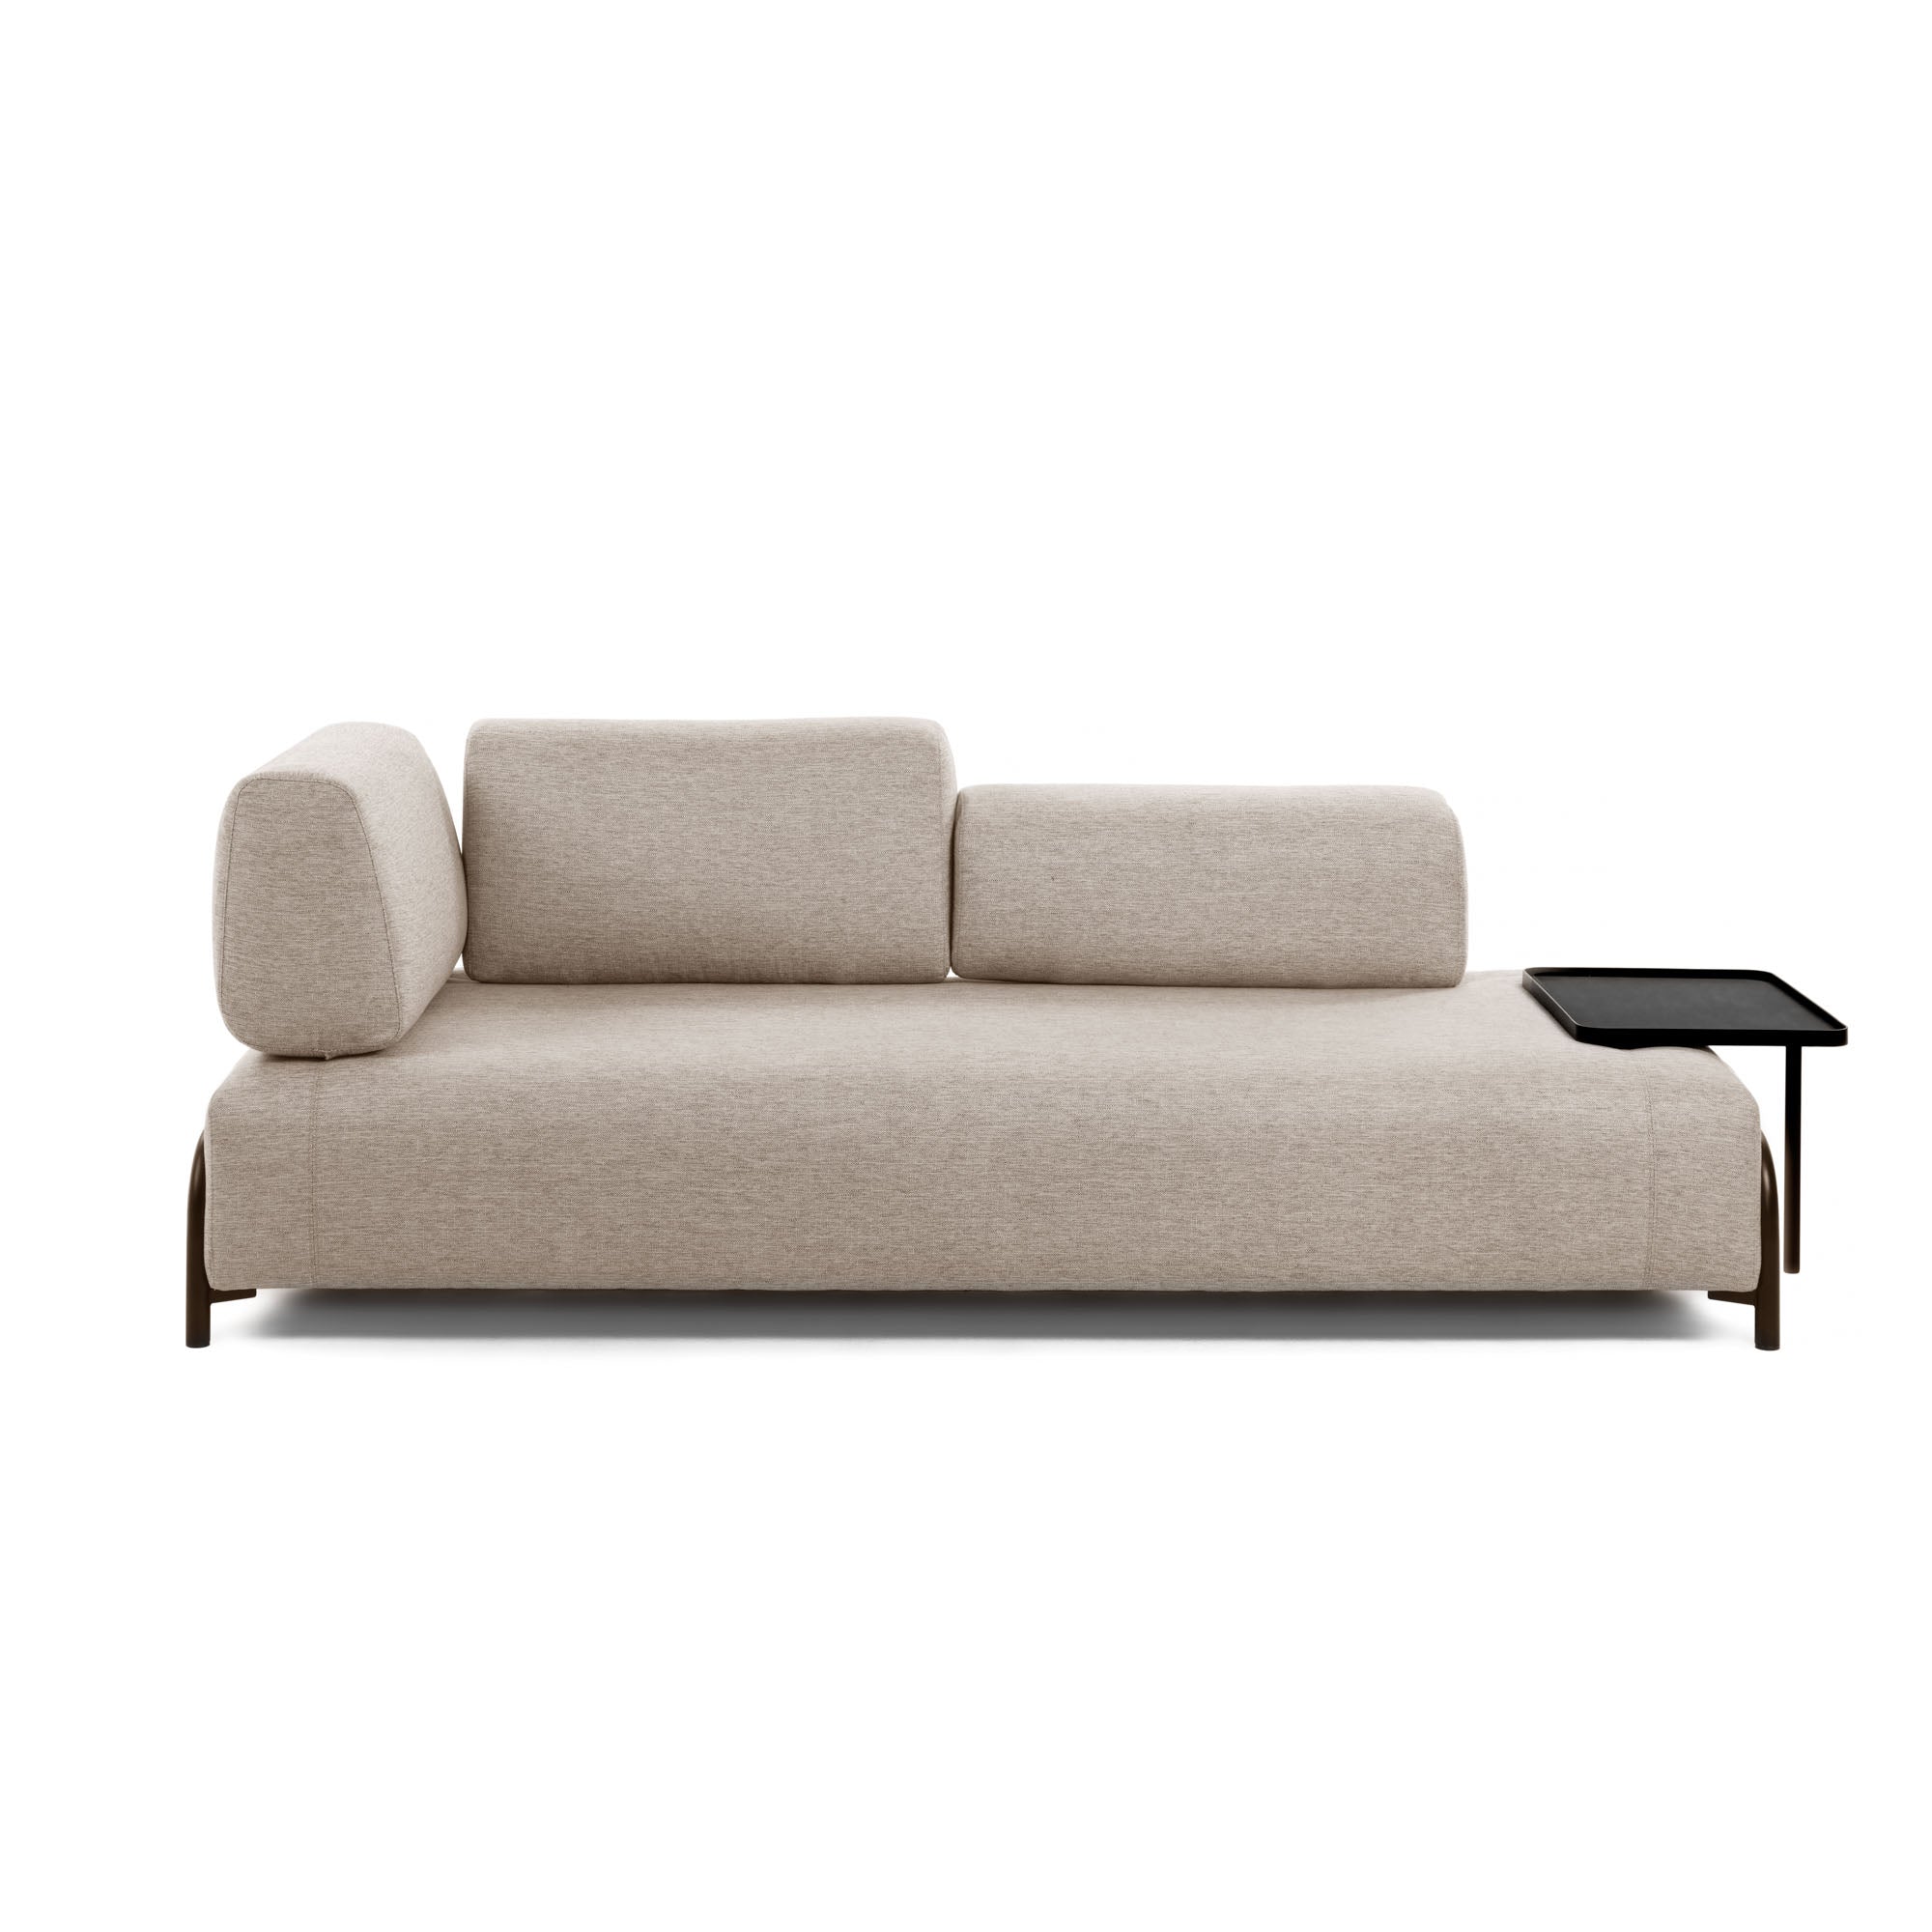 Compo 3 személyes kanapé nagy tálcával, bézs színben, 252 cm